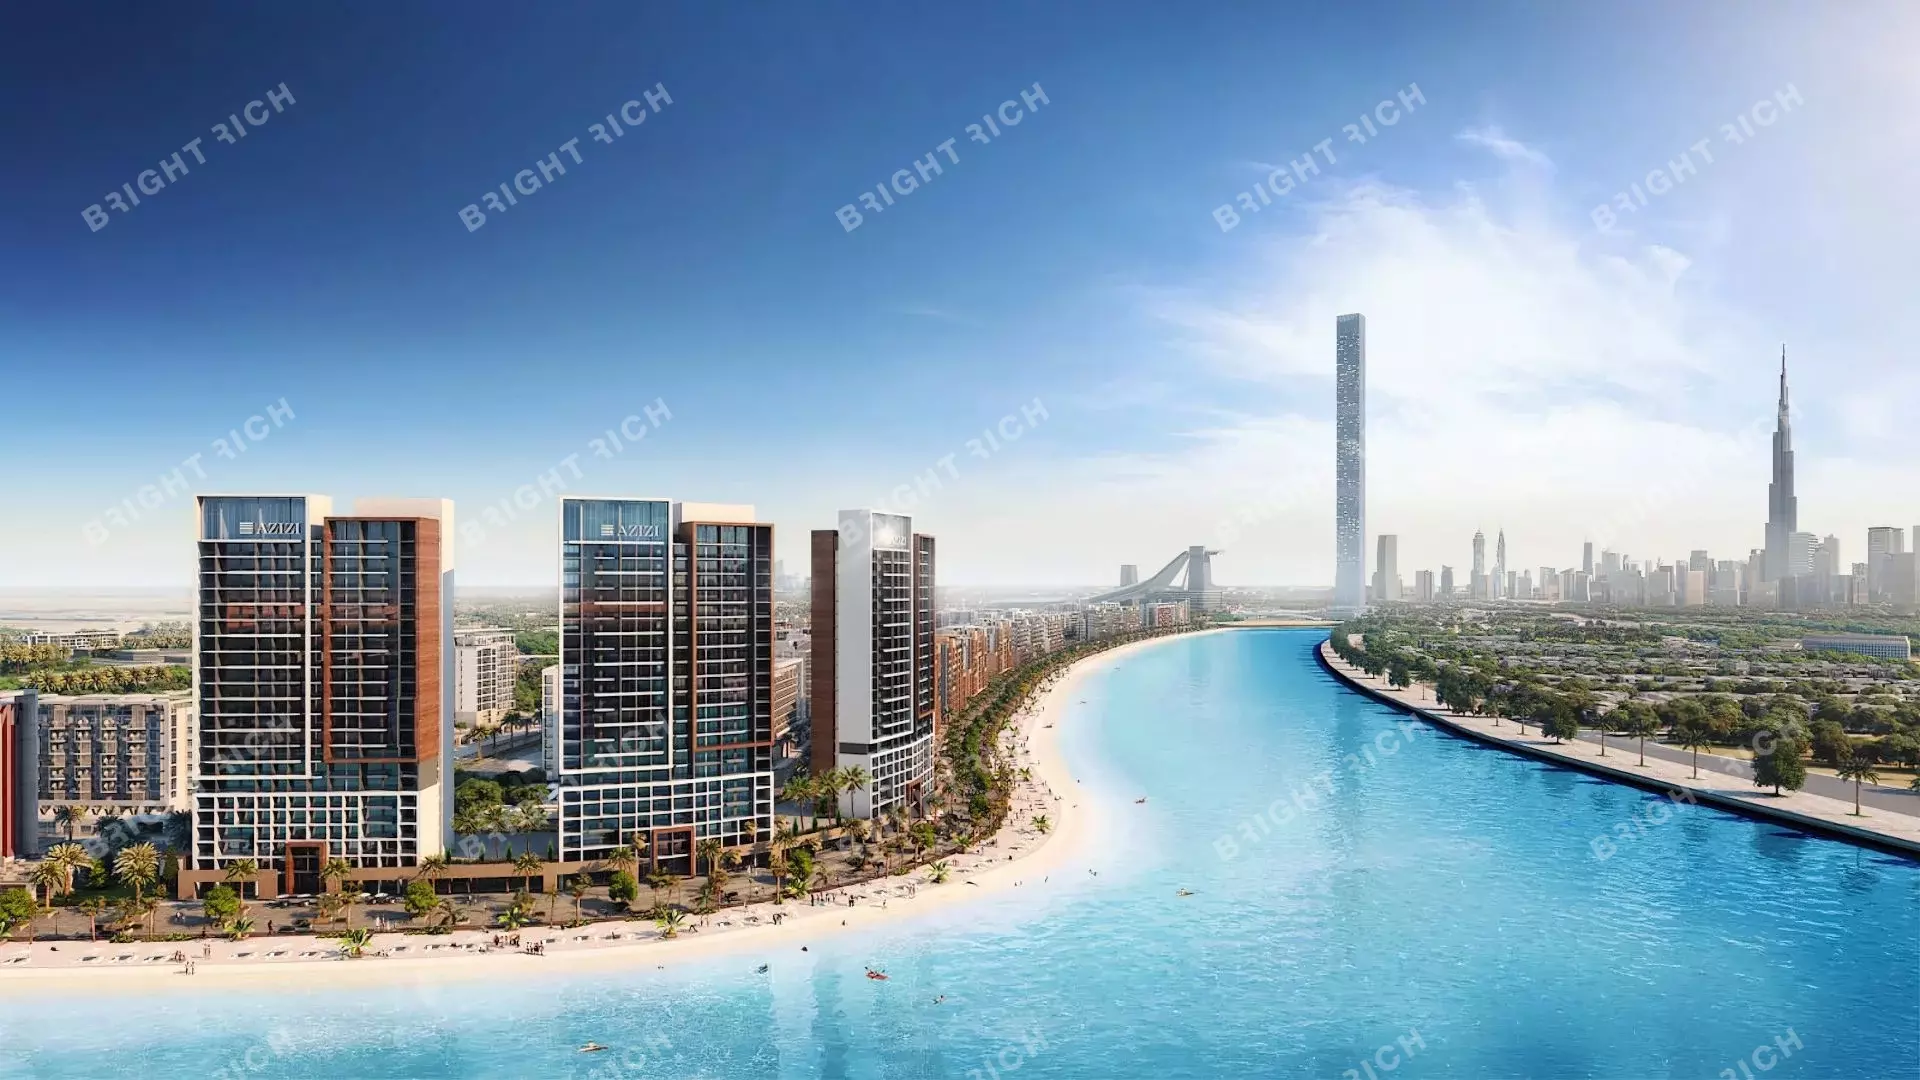 Azizi Riviera Building 14, apart complex in Dubai - 0